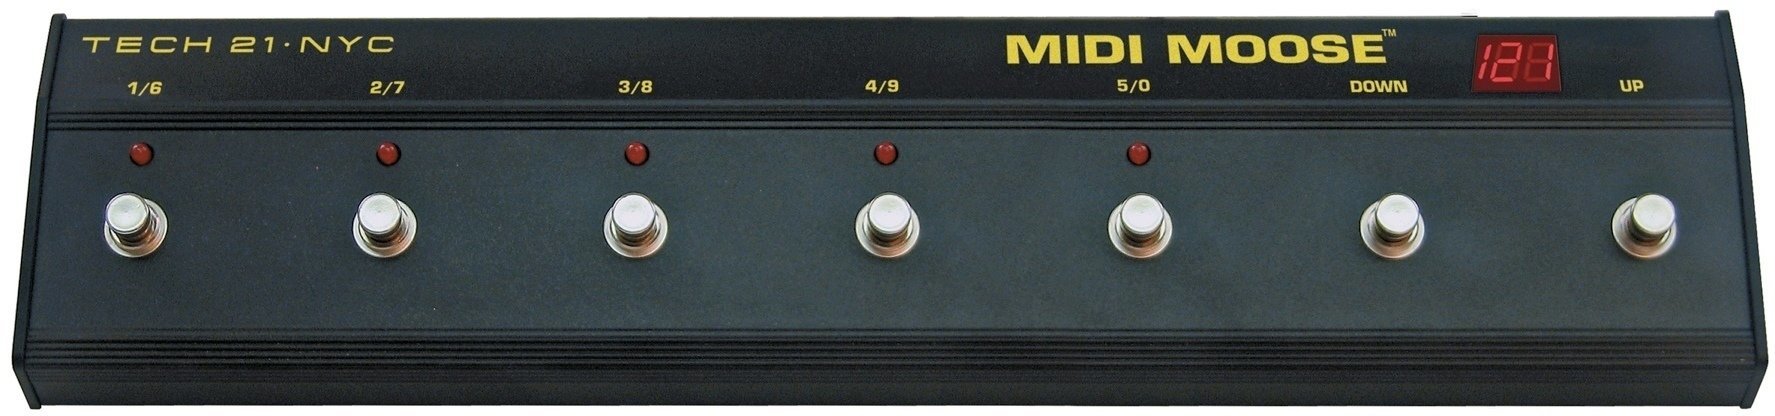 MIDI kontroler Tech 21 MIDI Moose